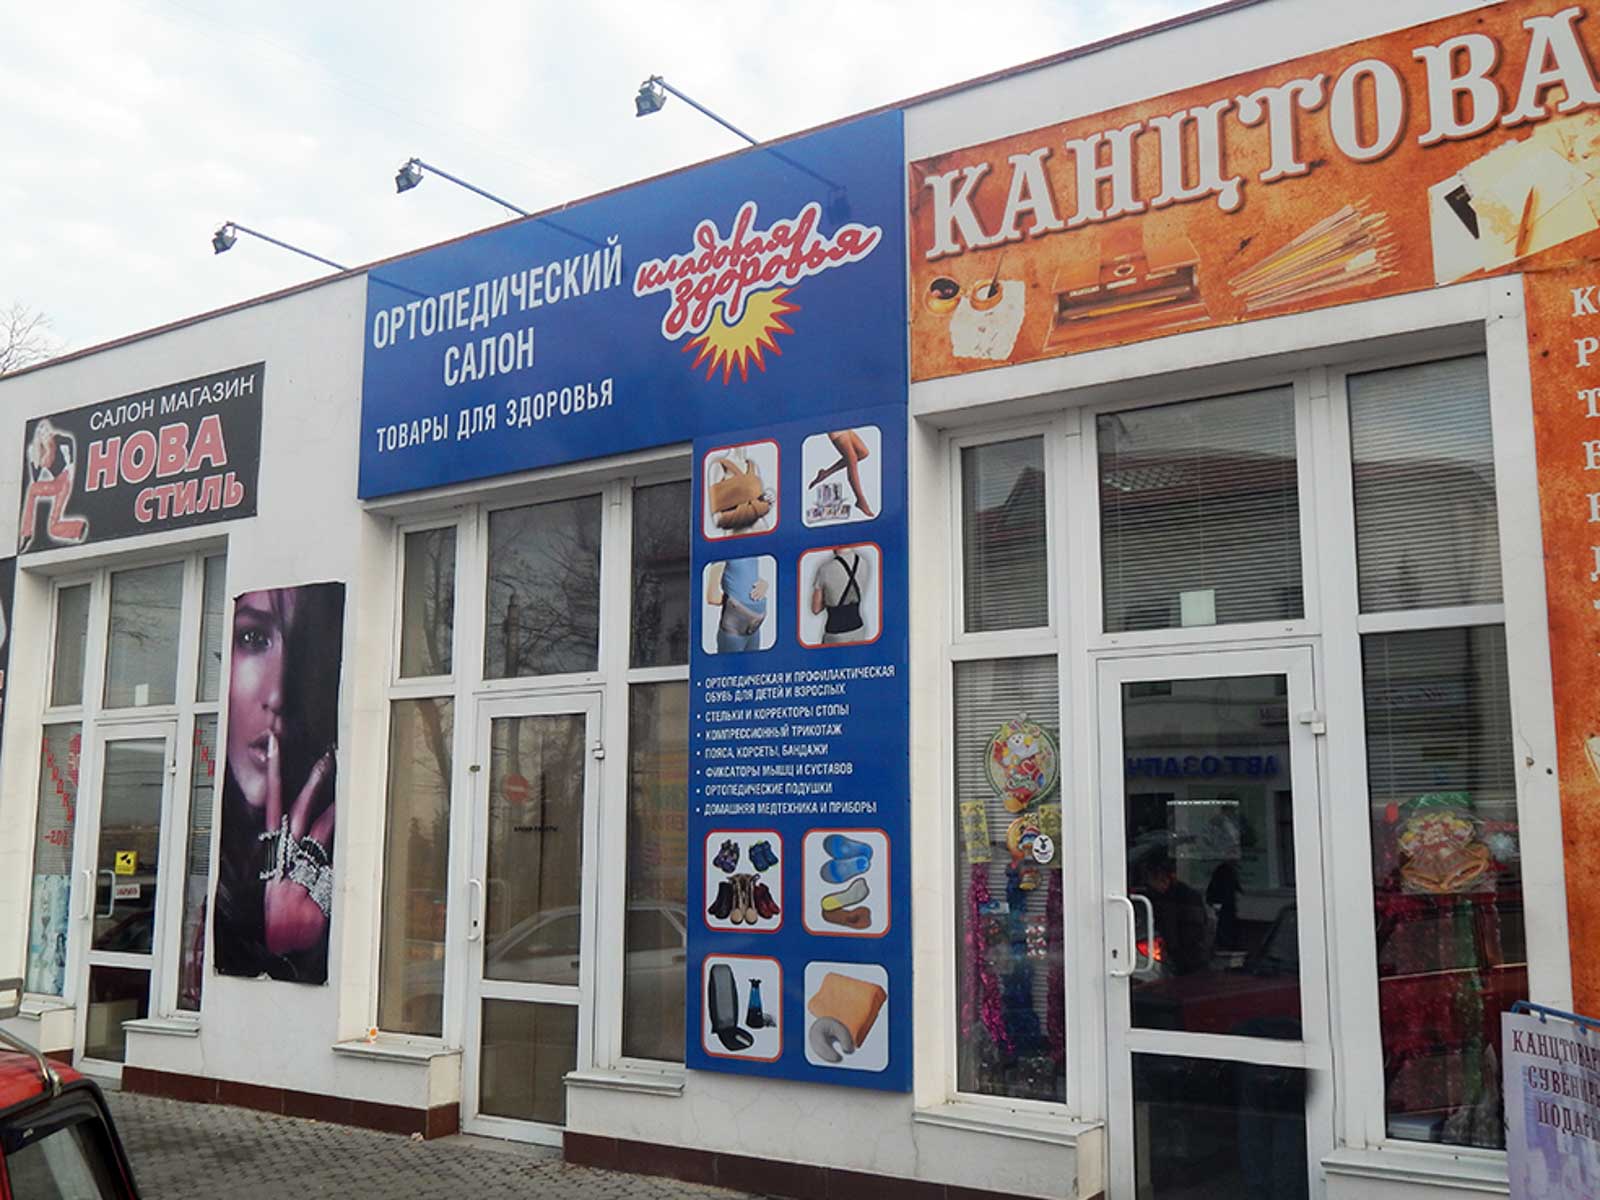 Большие Магазины В Севастополе